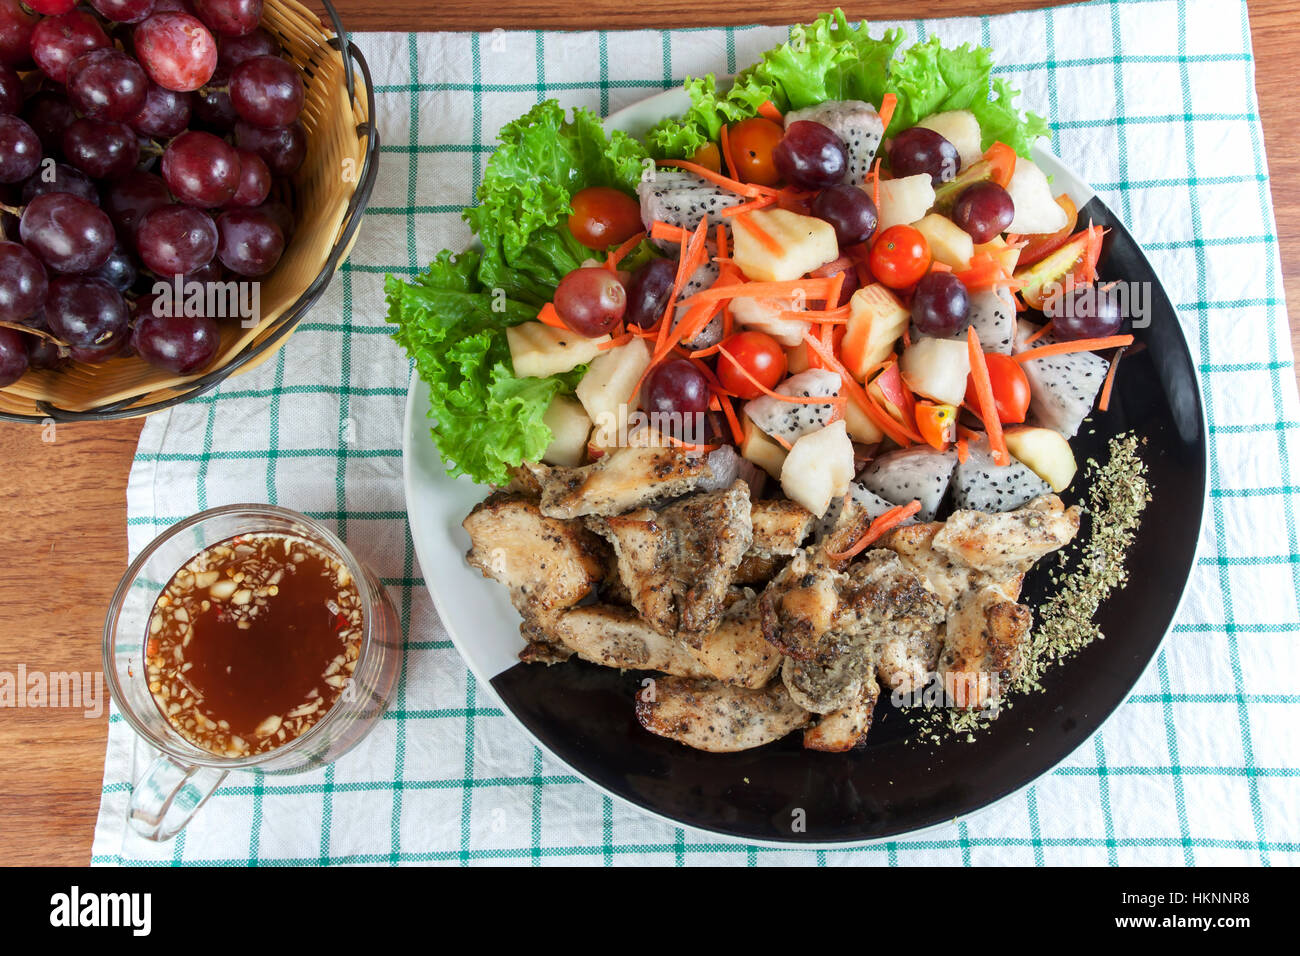 Cibo sano. Pollo grigliato cosparso con origano e frutta mix insalata piccante su una piastra. Foto Stock